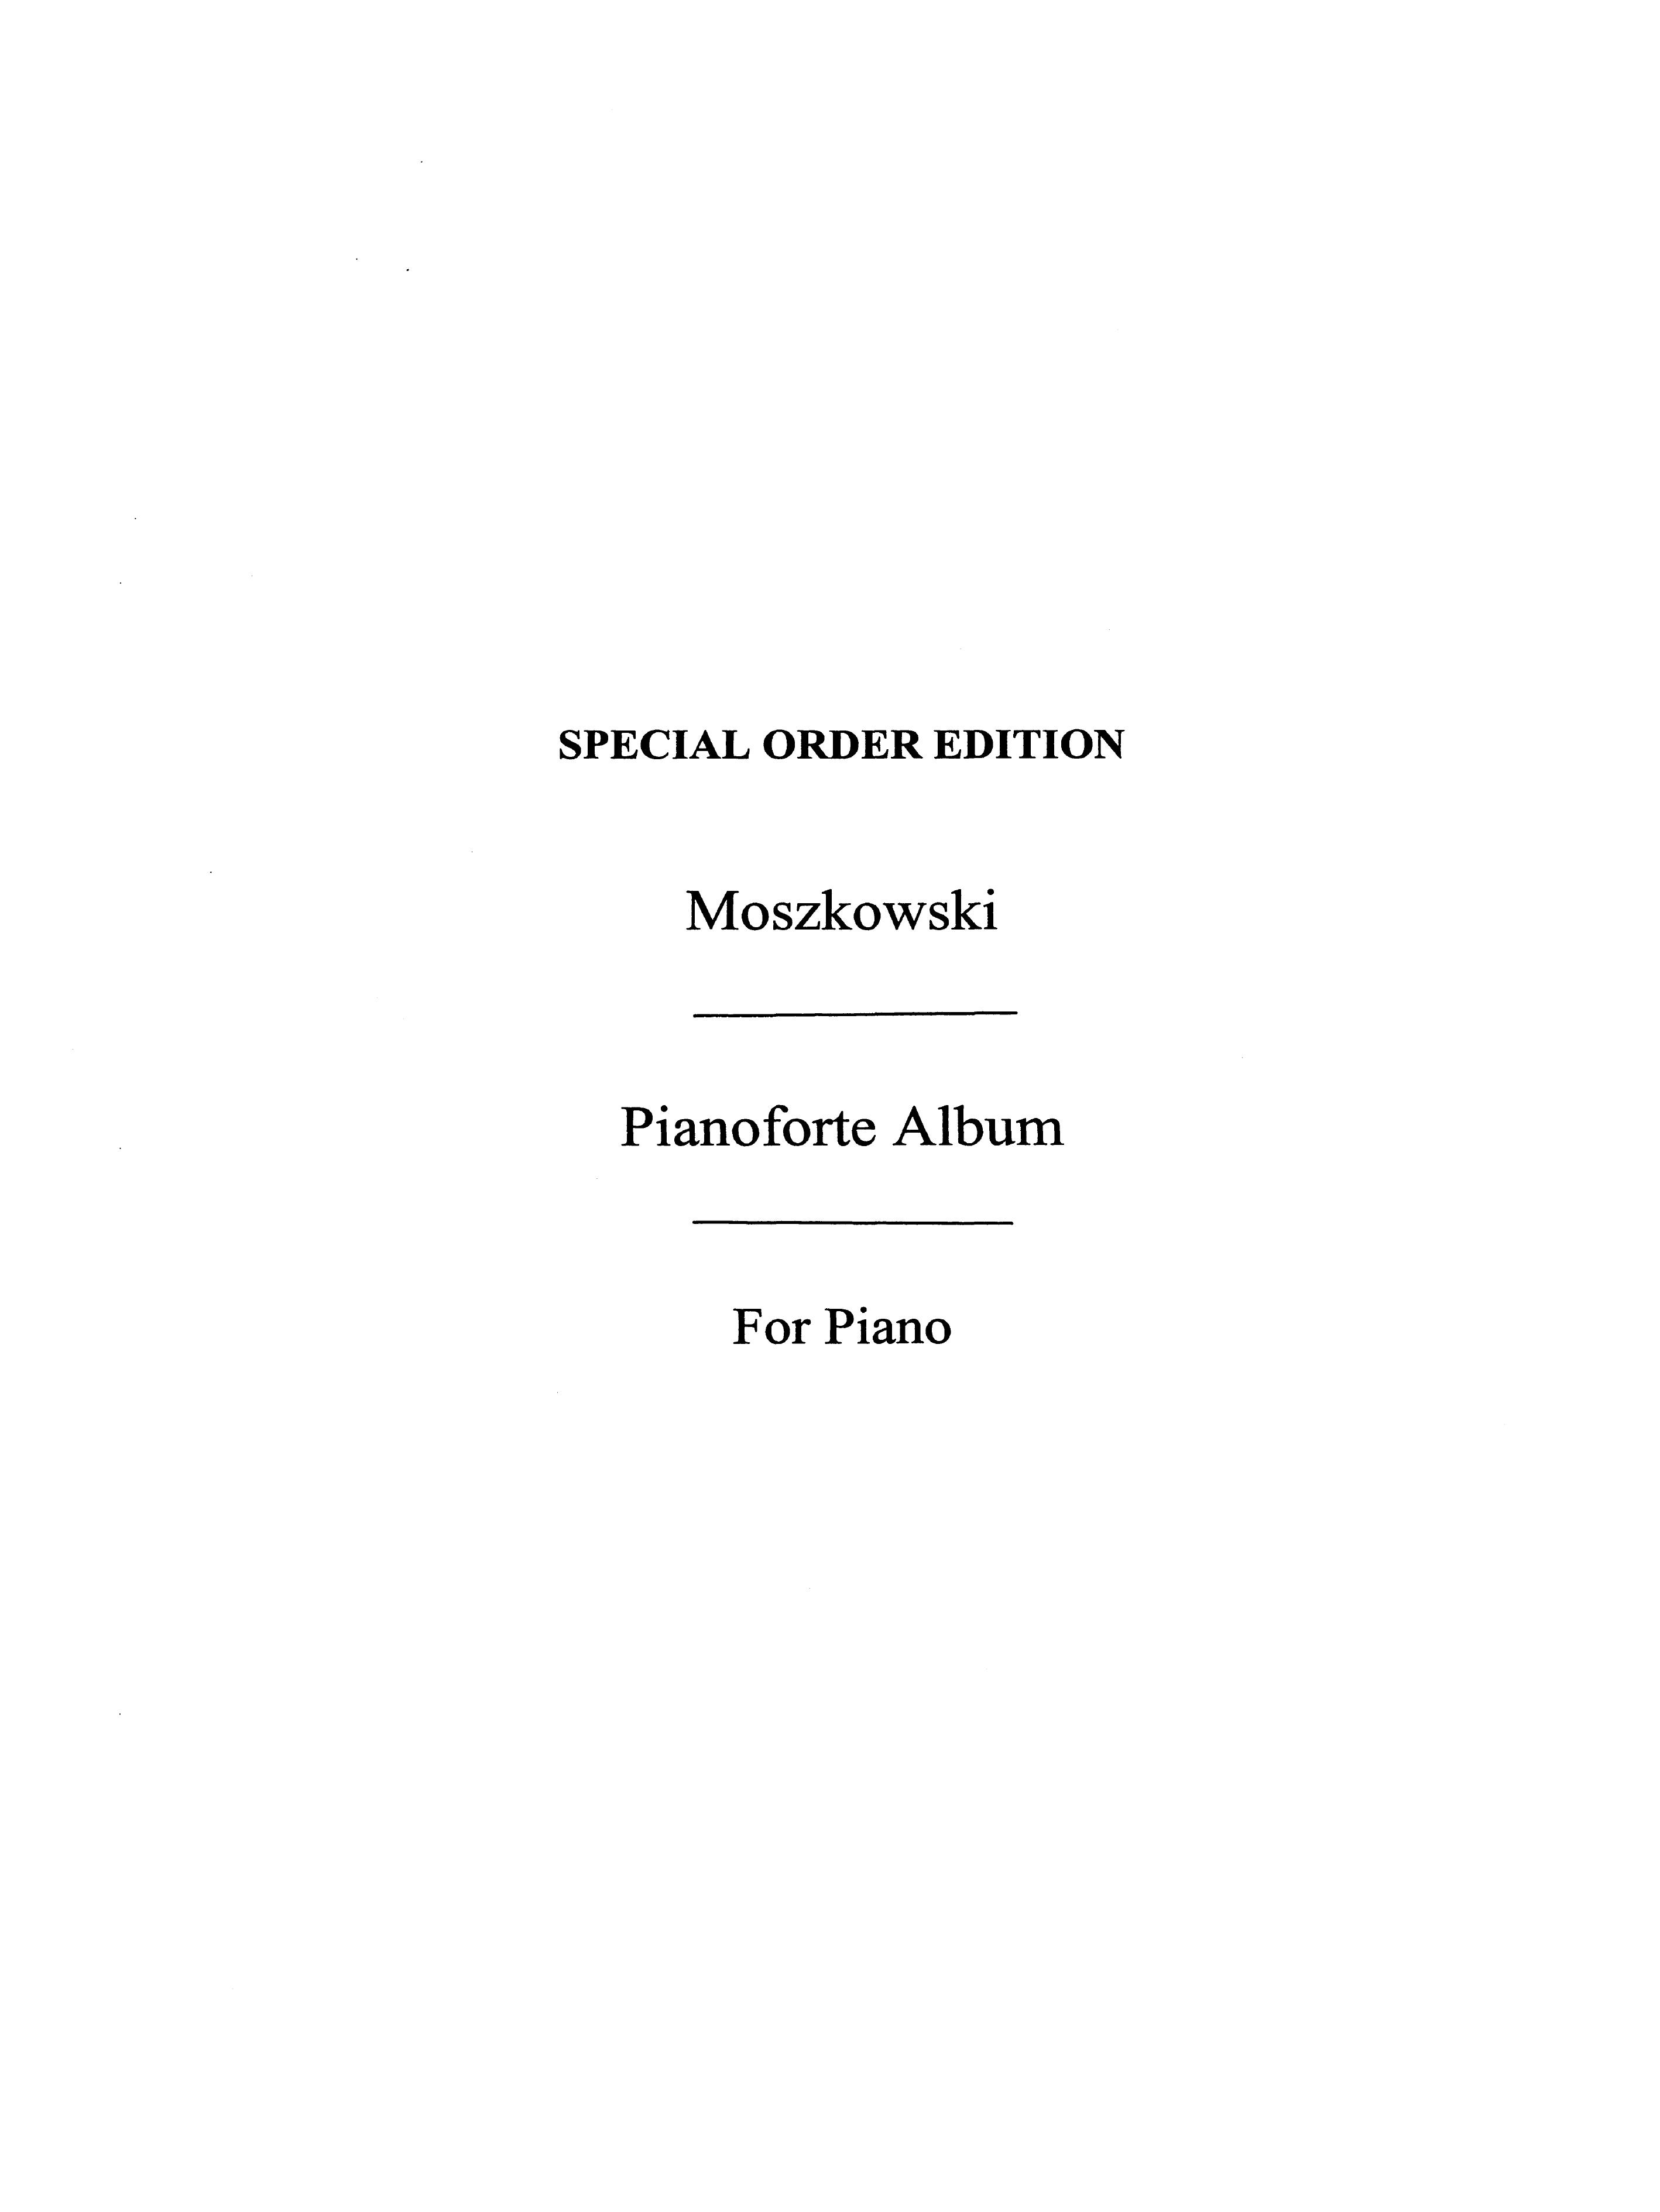 Moszkowski, M Album Of Eight Pieces Pf